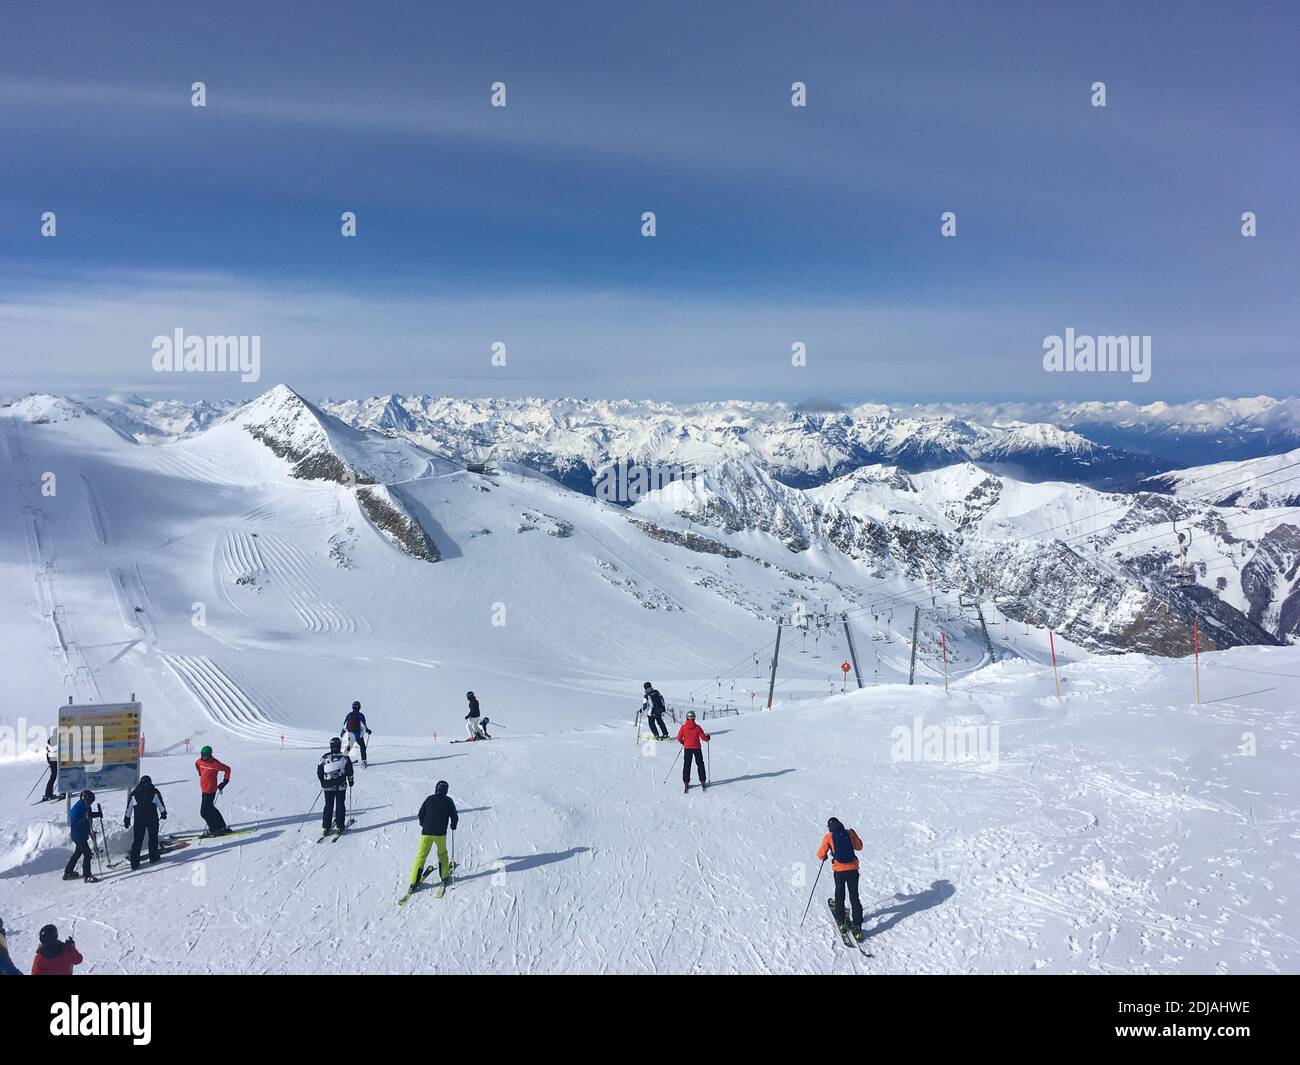 Panorama d'hiver depuis le sommet de la télécabine Gletscherbus 3 avec vue sur les skieurs et les montagnes, glacier Hintertux, Mayrhofen, Tyrol, Autriche Banque D'Images